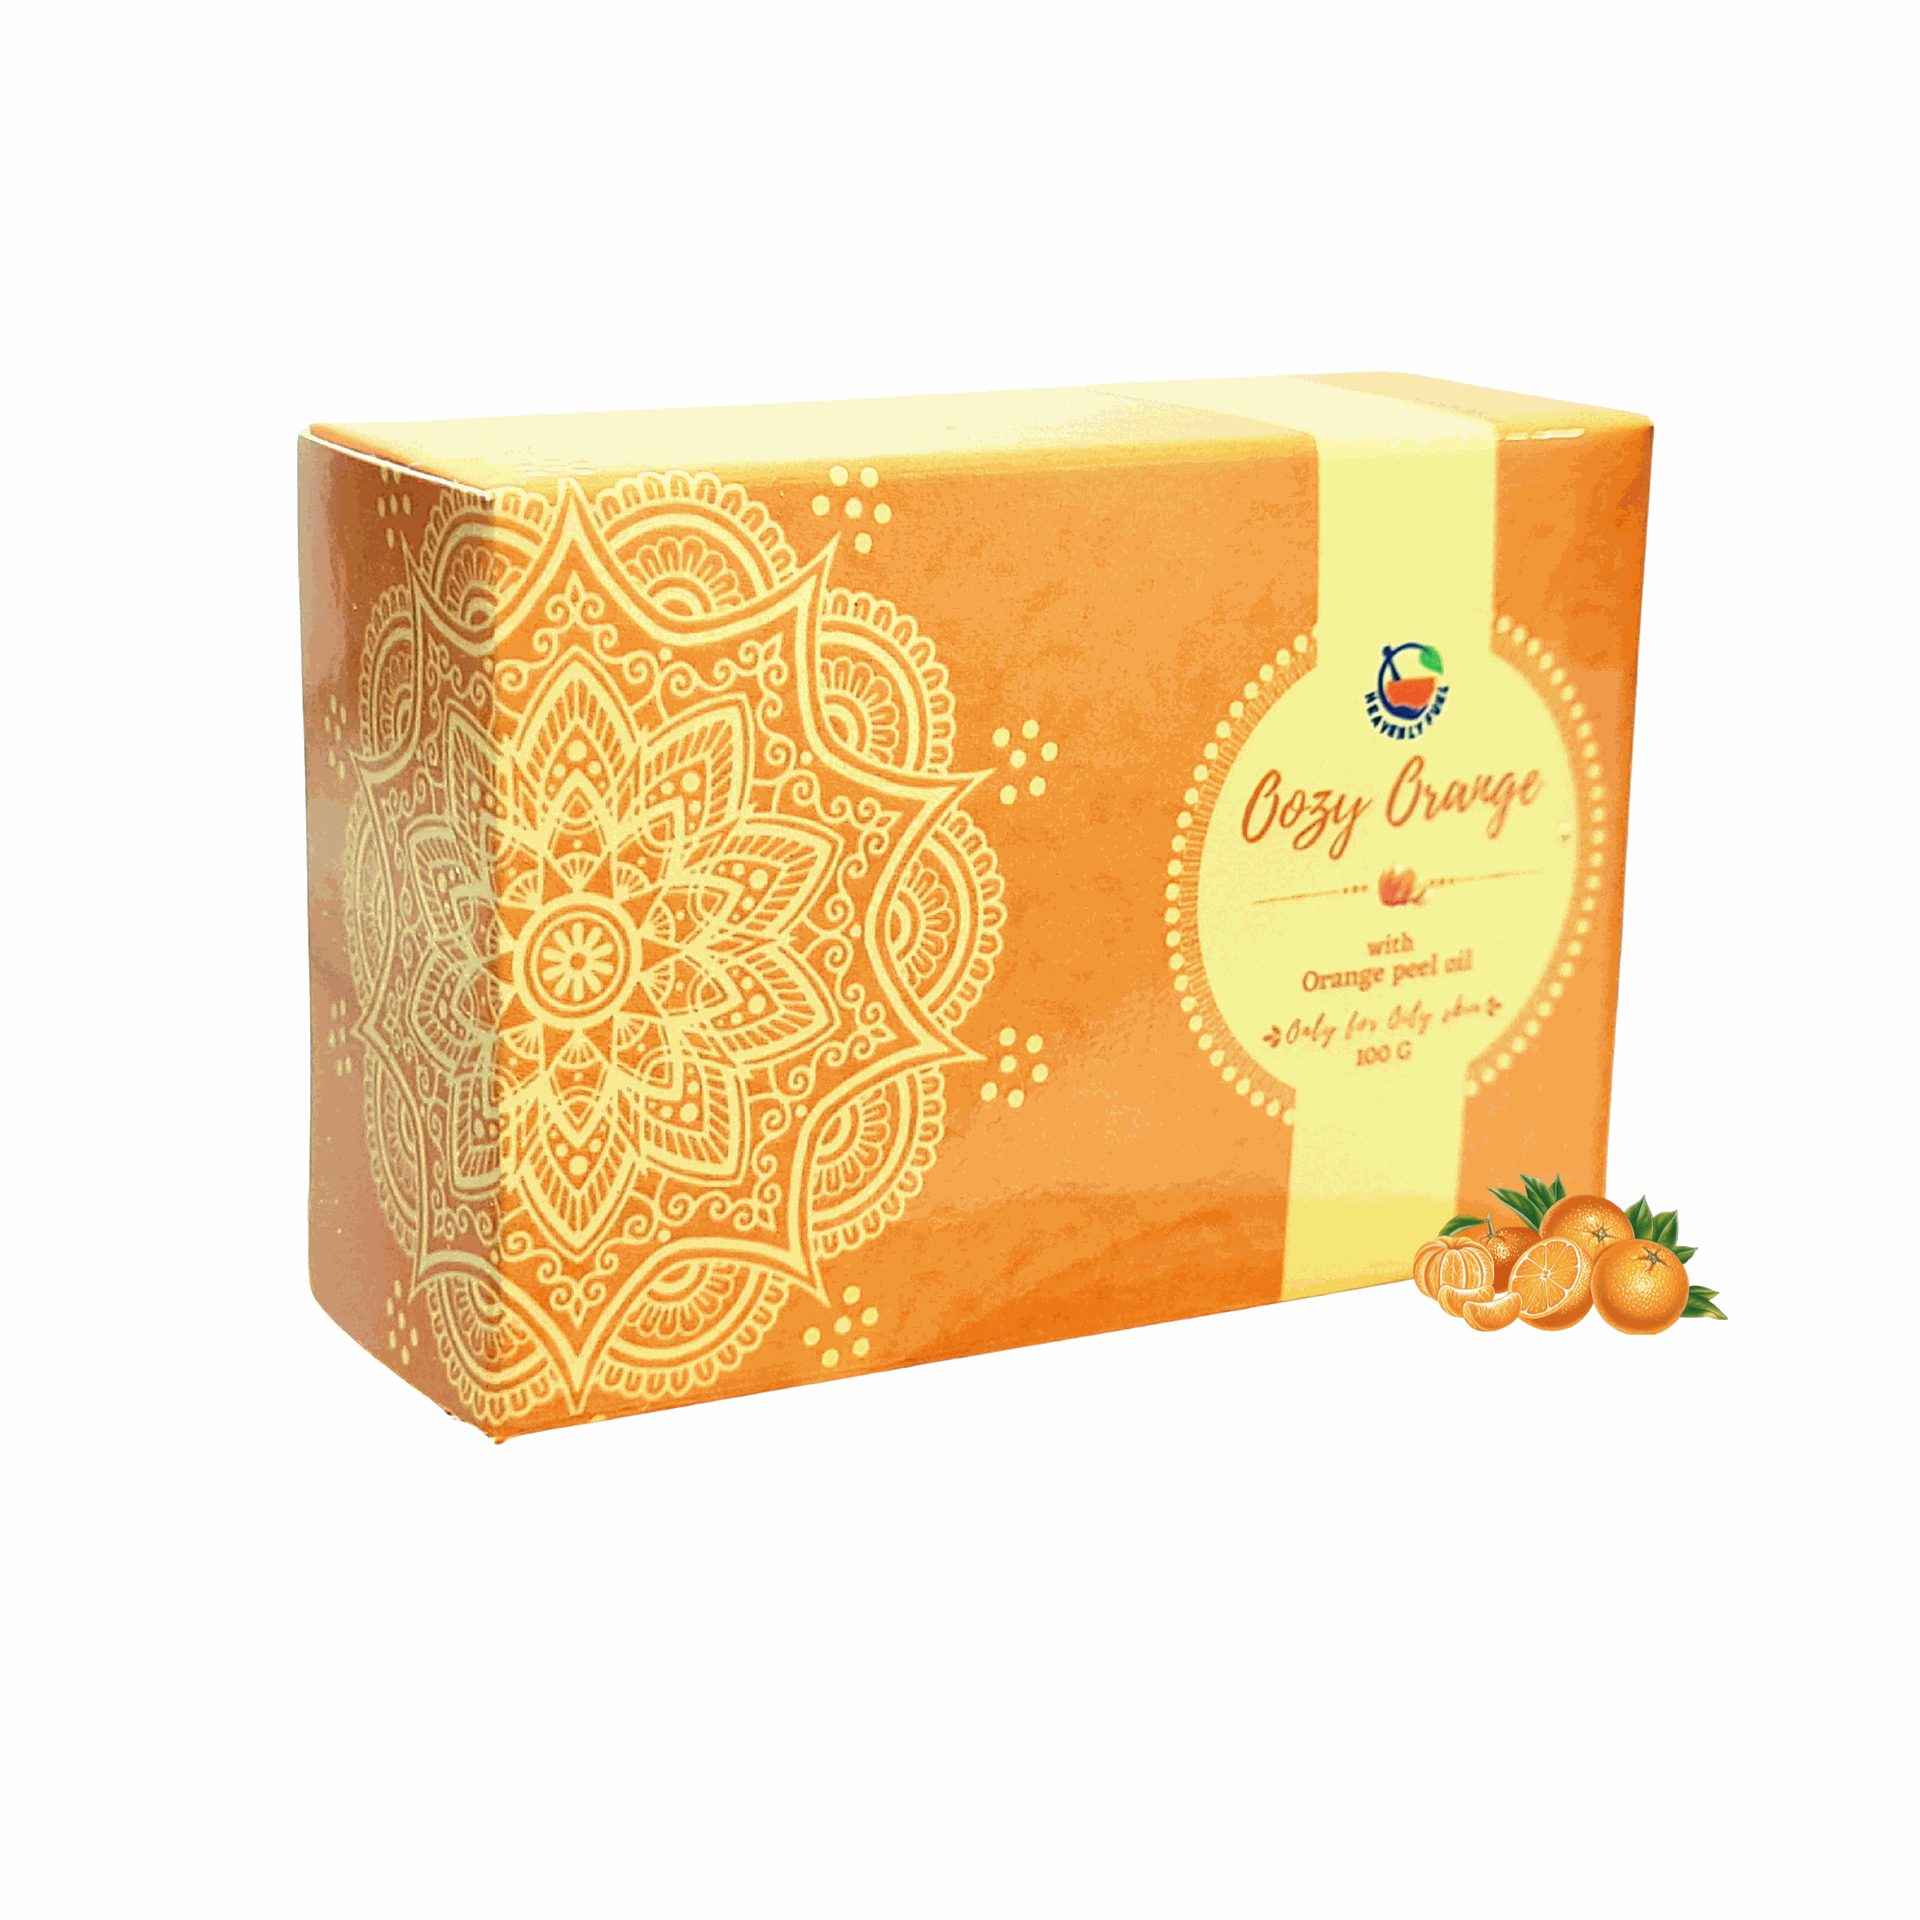 Oozy Orange |Handmade Butter Soap|100g - hfnl!fe